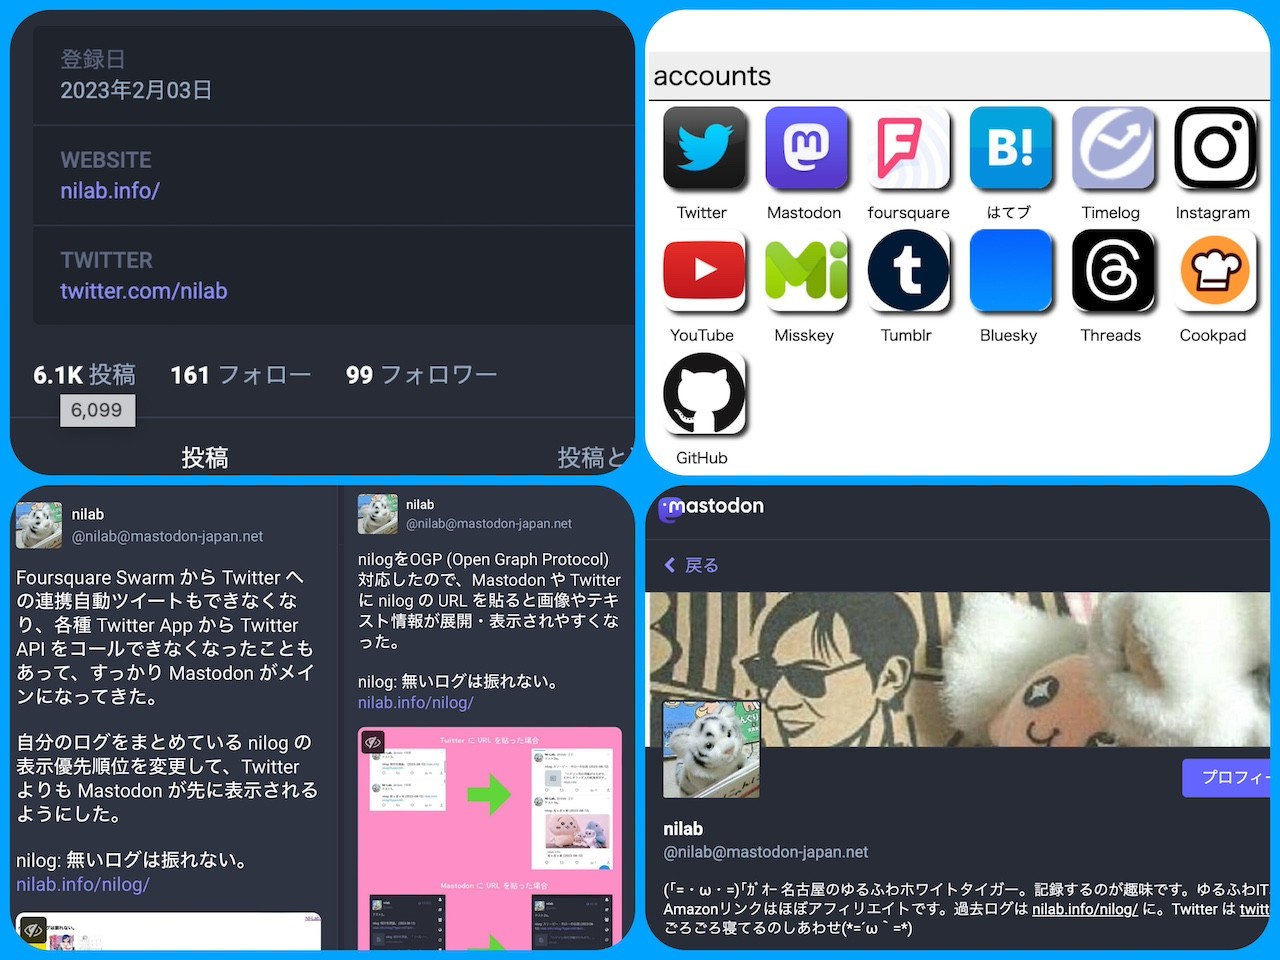 Twitter → Mastodon